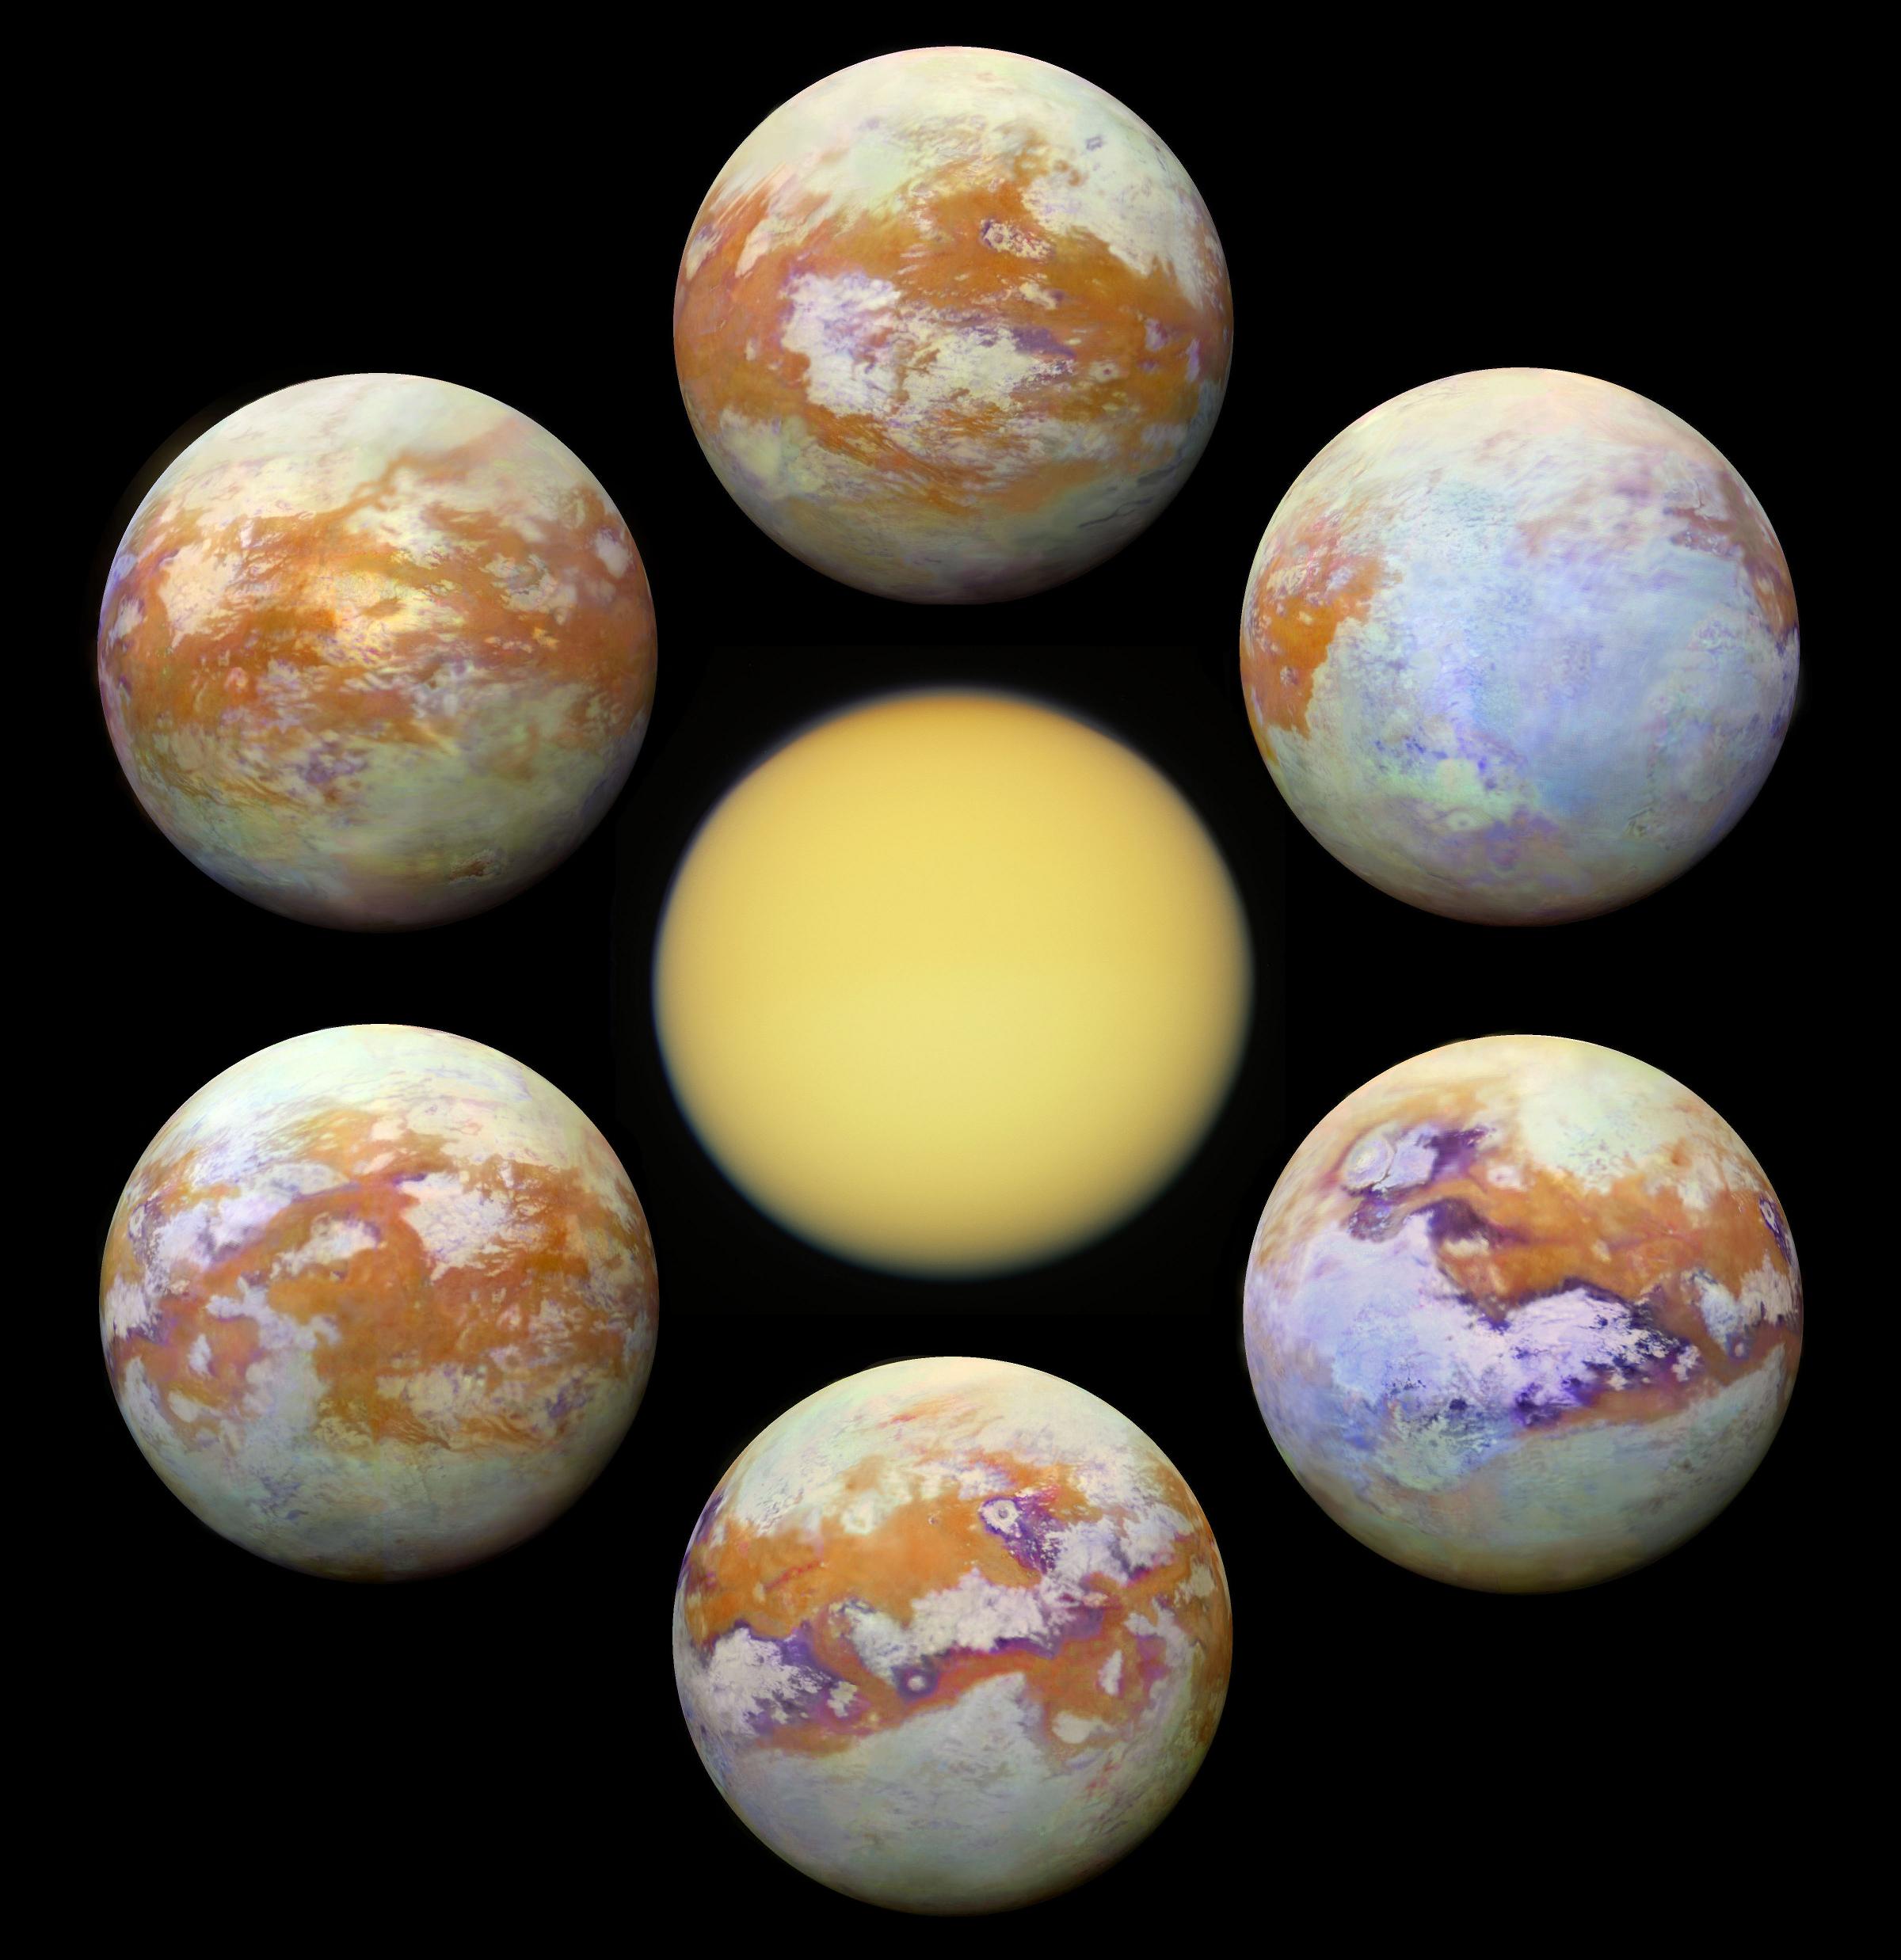 "تيتان"، قمر زُحَل الأكبر، في المركز بالضوء المرئي حيث لا معالم واضحة له، و6 لوحات من حوله تعرضه بالضوء تحت الأحمر بمعالم مُذهلة.